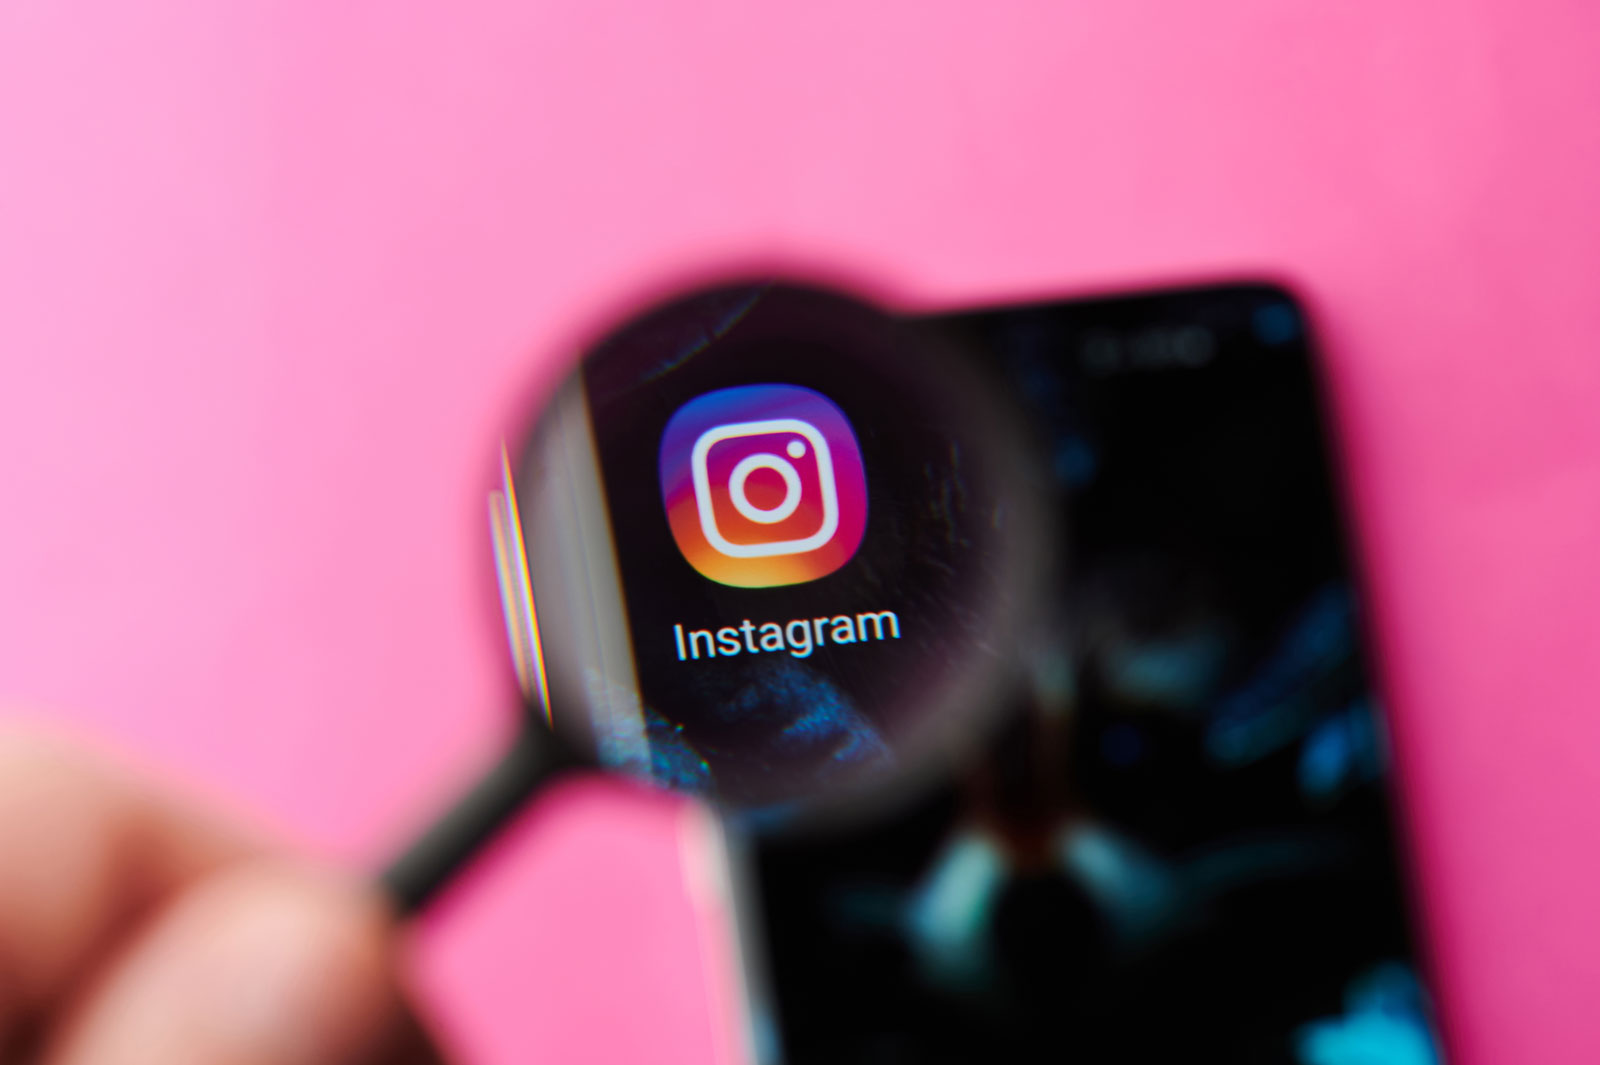 Uma pessoa segurando um lupa, que está aumentando o logo do Instagram em um smartphone